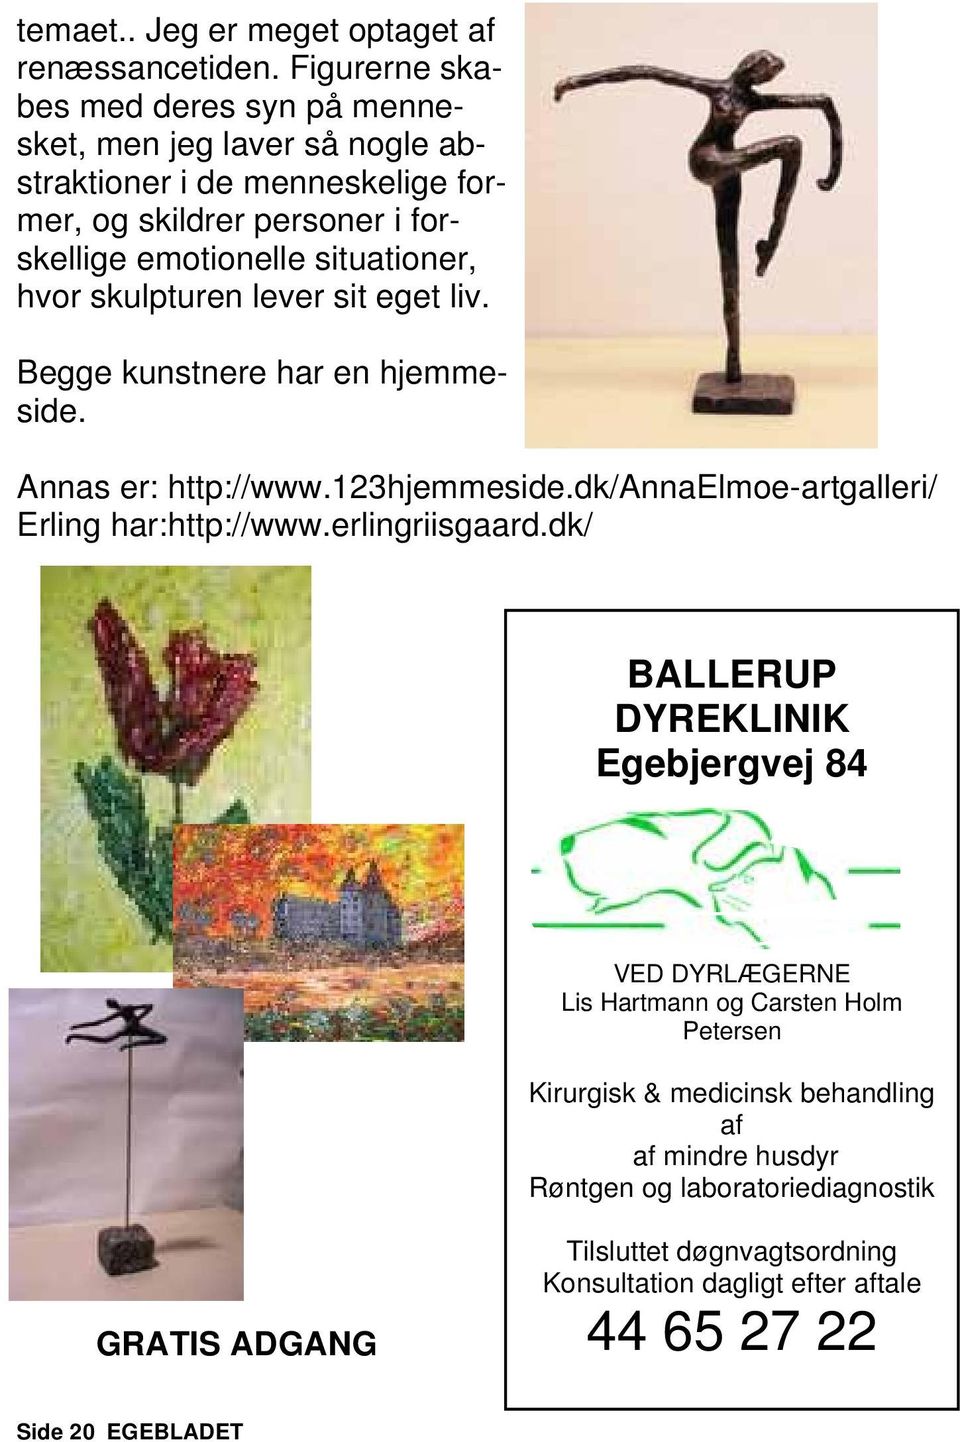 hvor skulpturen lever sit eget liv. Begge kunstnere har en hjemmeside. Annas er: http://www.123hjemmeside.dk/annaelmoe-artgalleri/ Erling har:http://www.